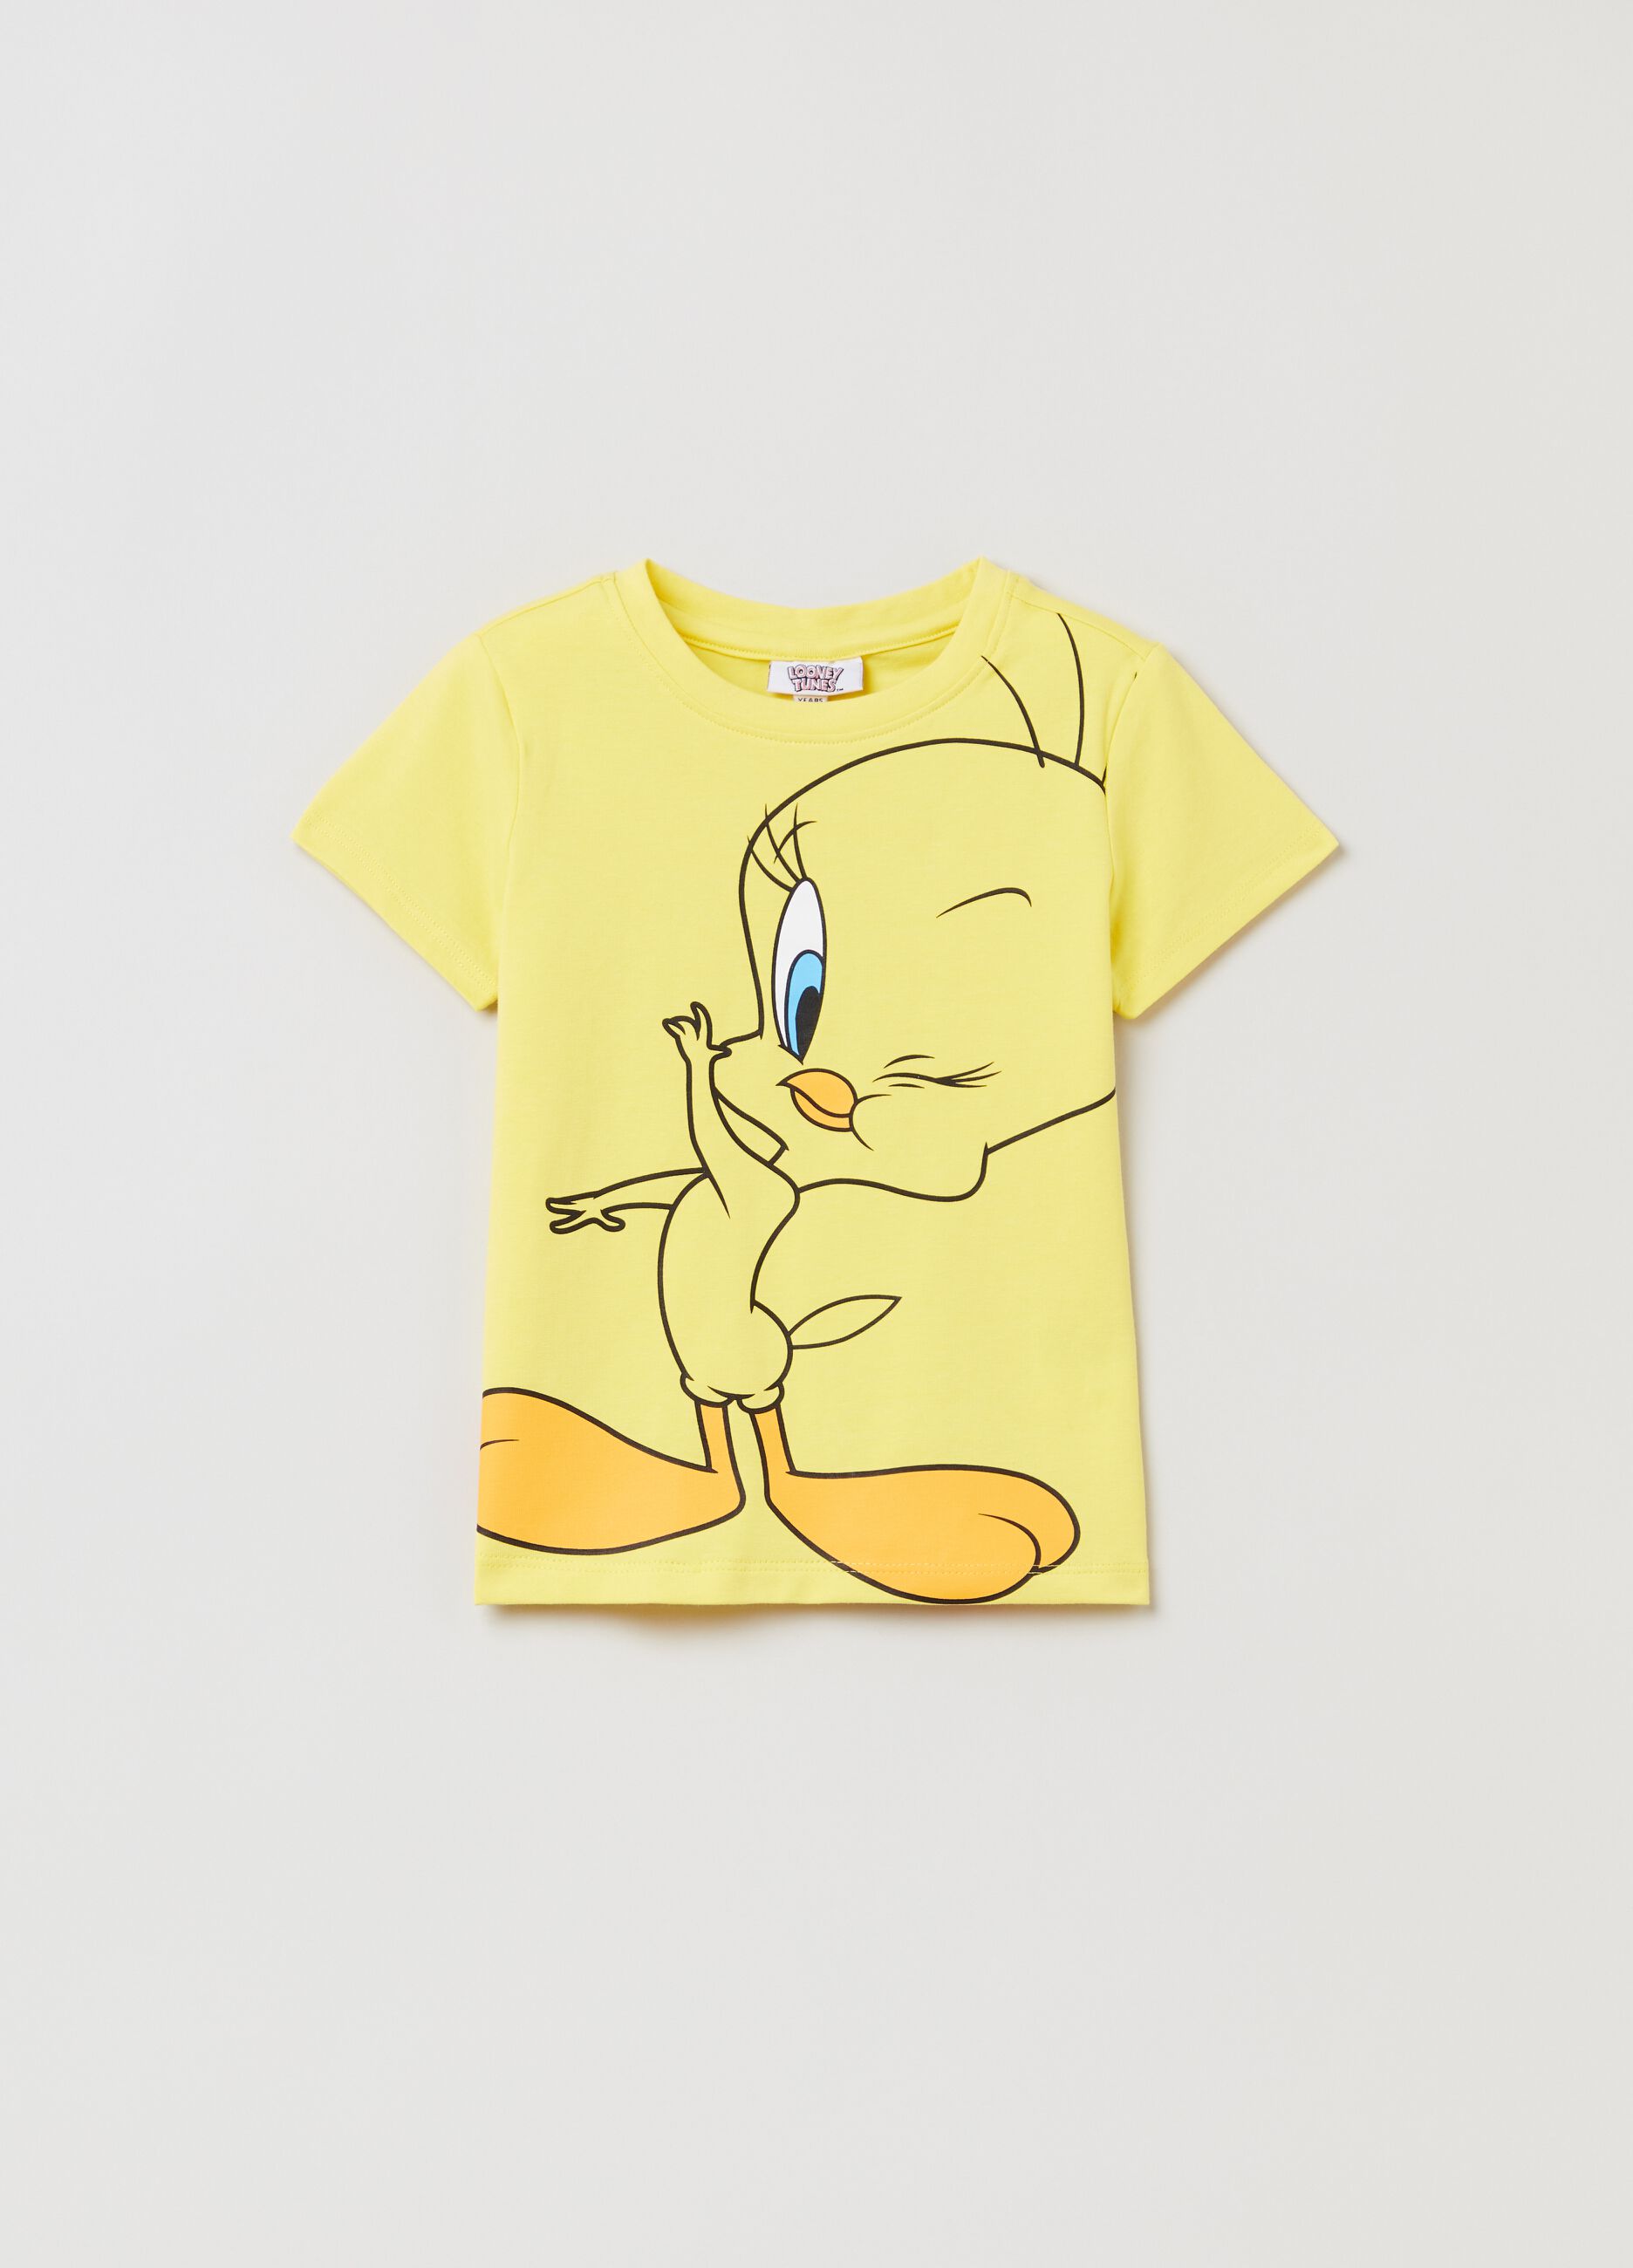 Stretch cotton T-shirt with Tweetie Pie print